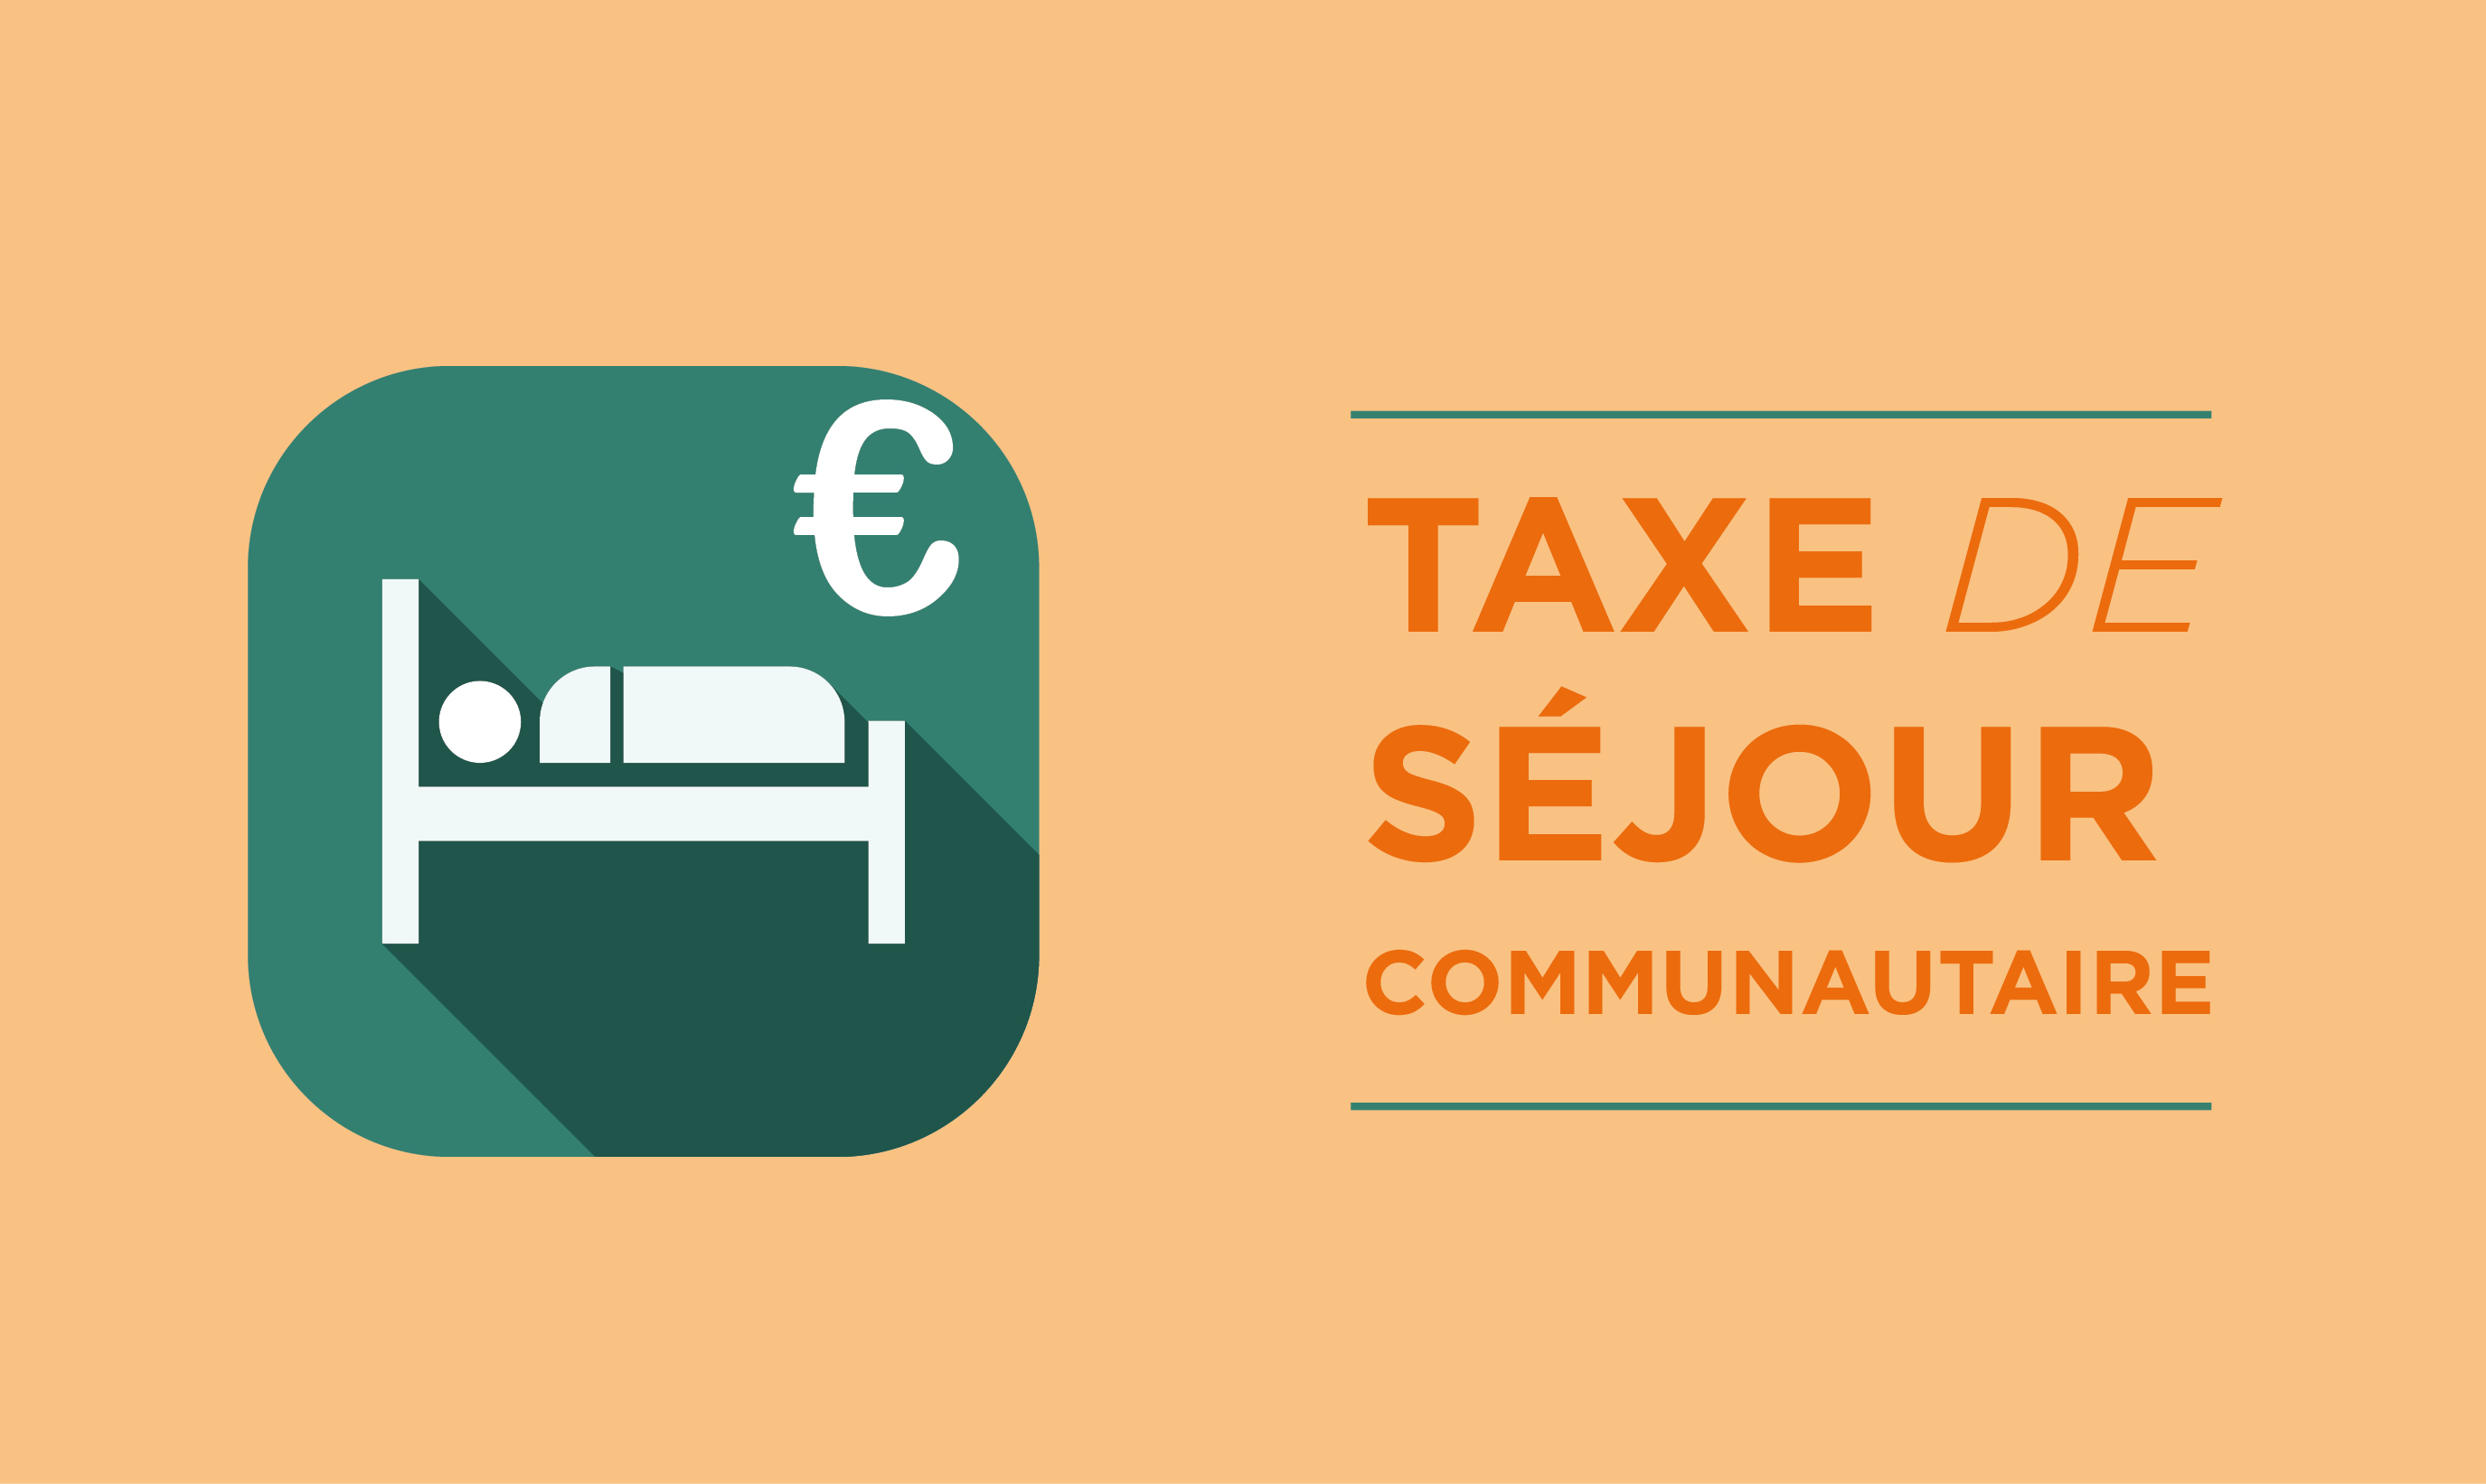 taxe_de_sejour_communautaire_ccb.jpg